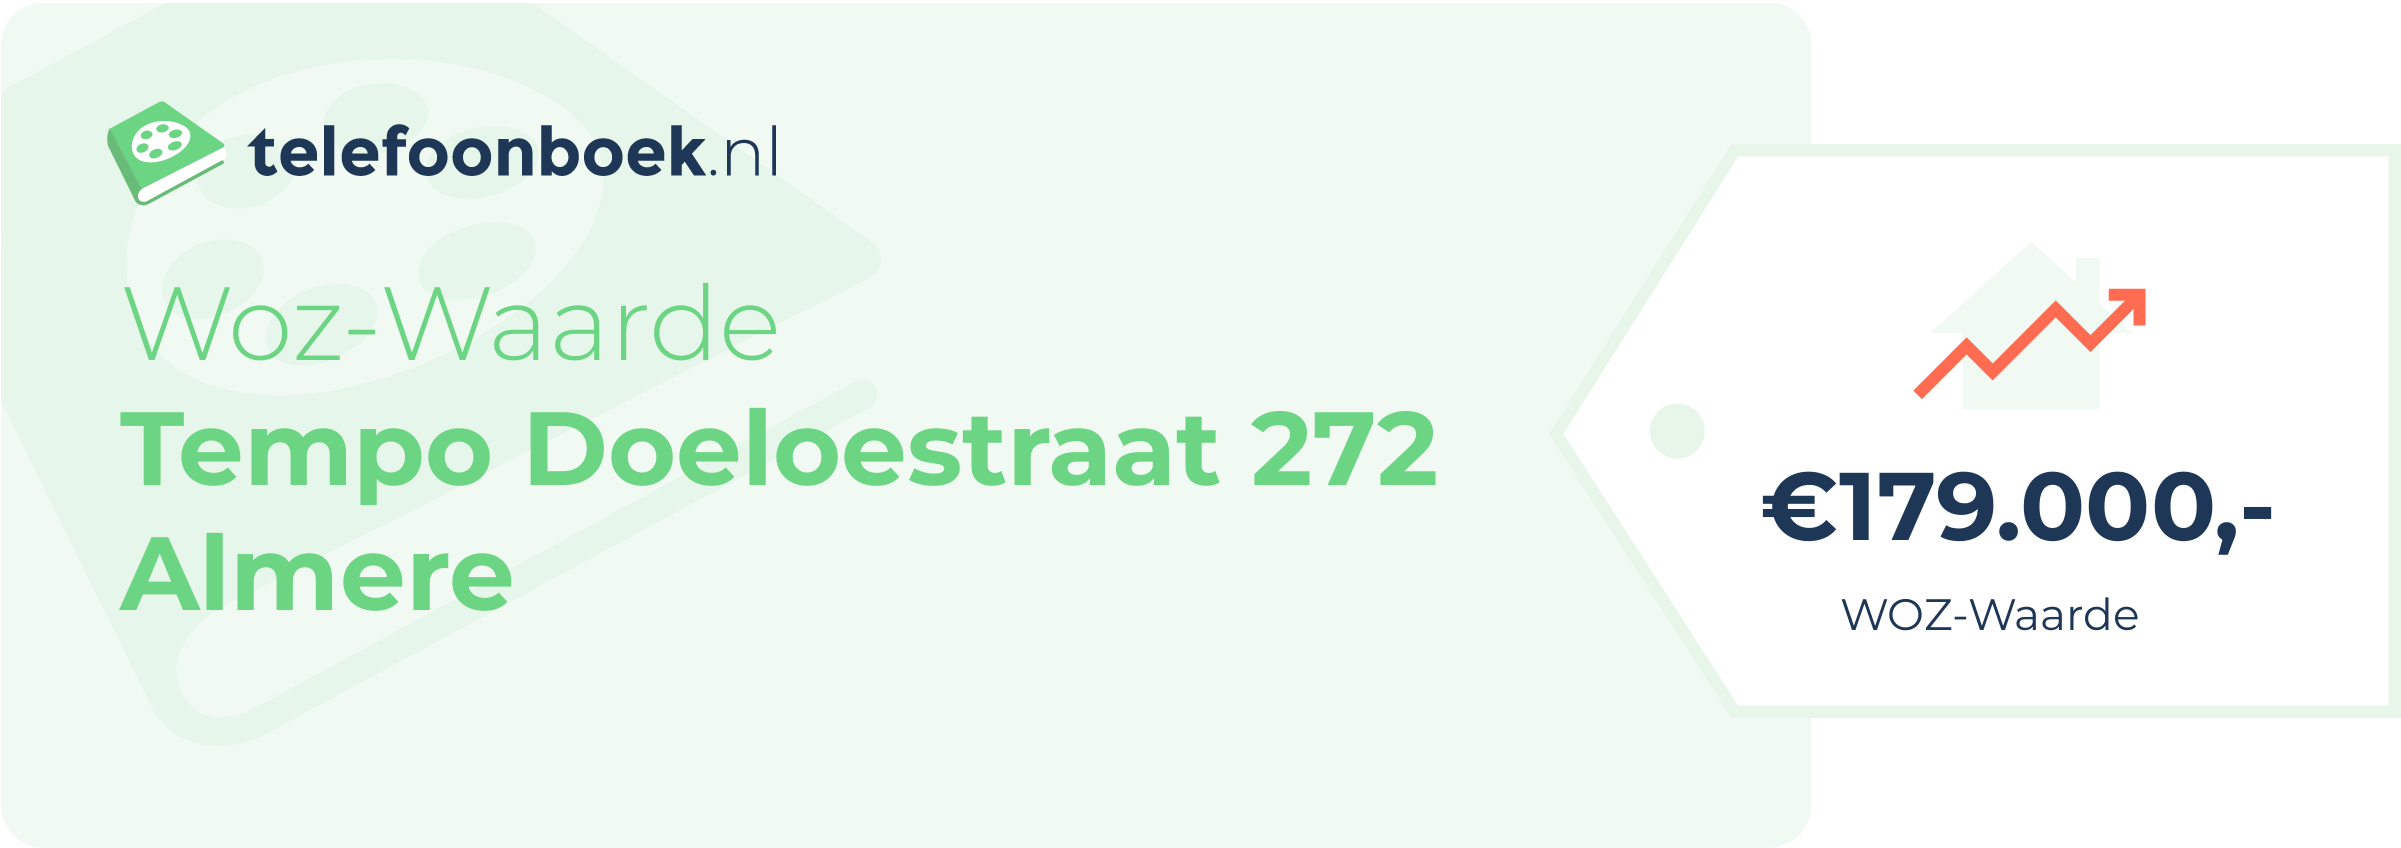 WOZ-waarde Tempo Doeloestraat 272 Almere